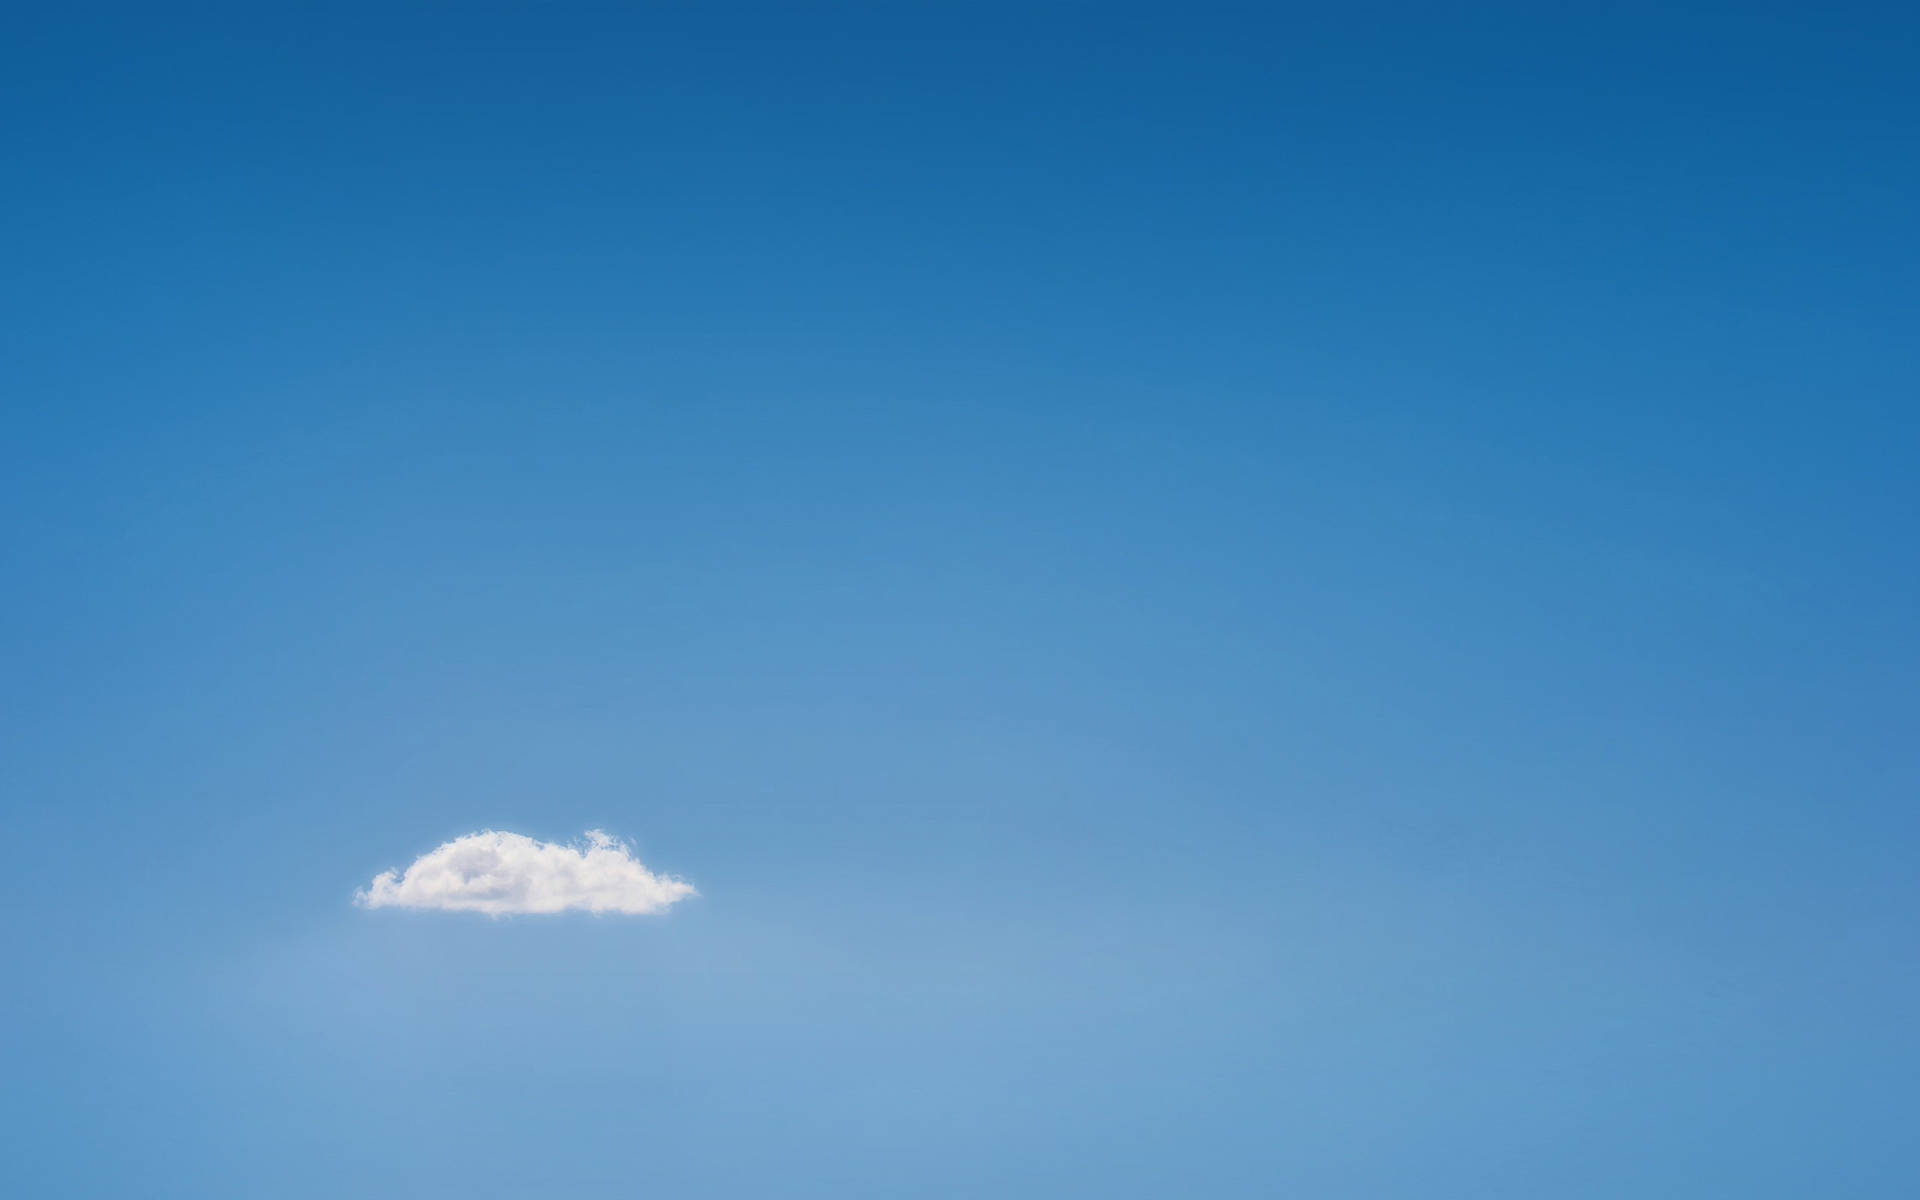 Macbook Air Lonely Cloud Wallpaper